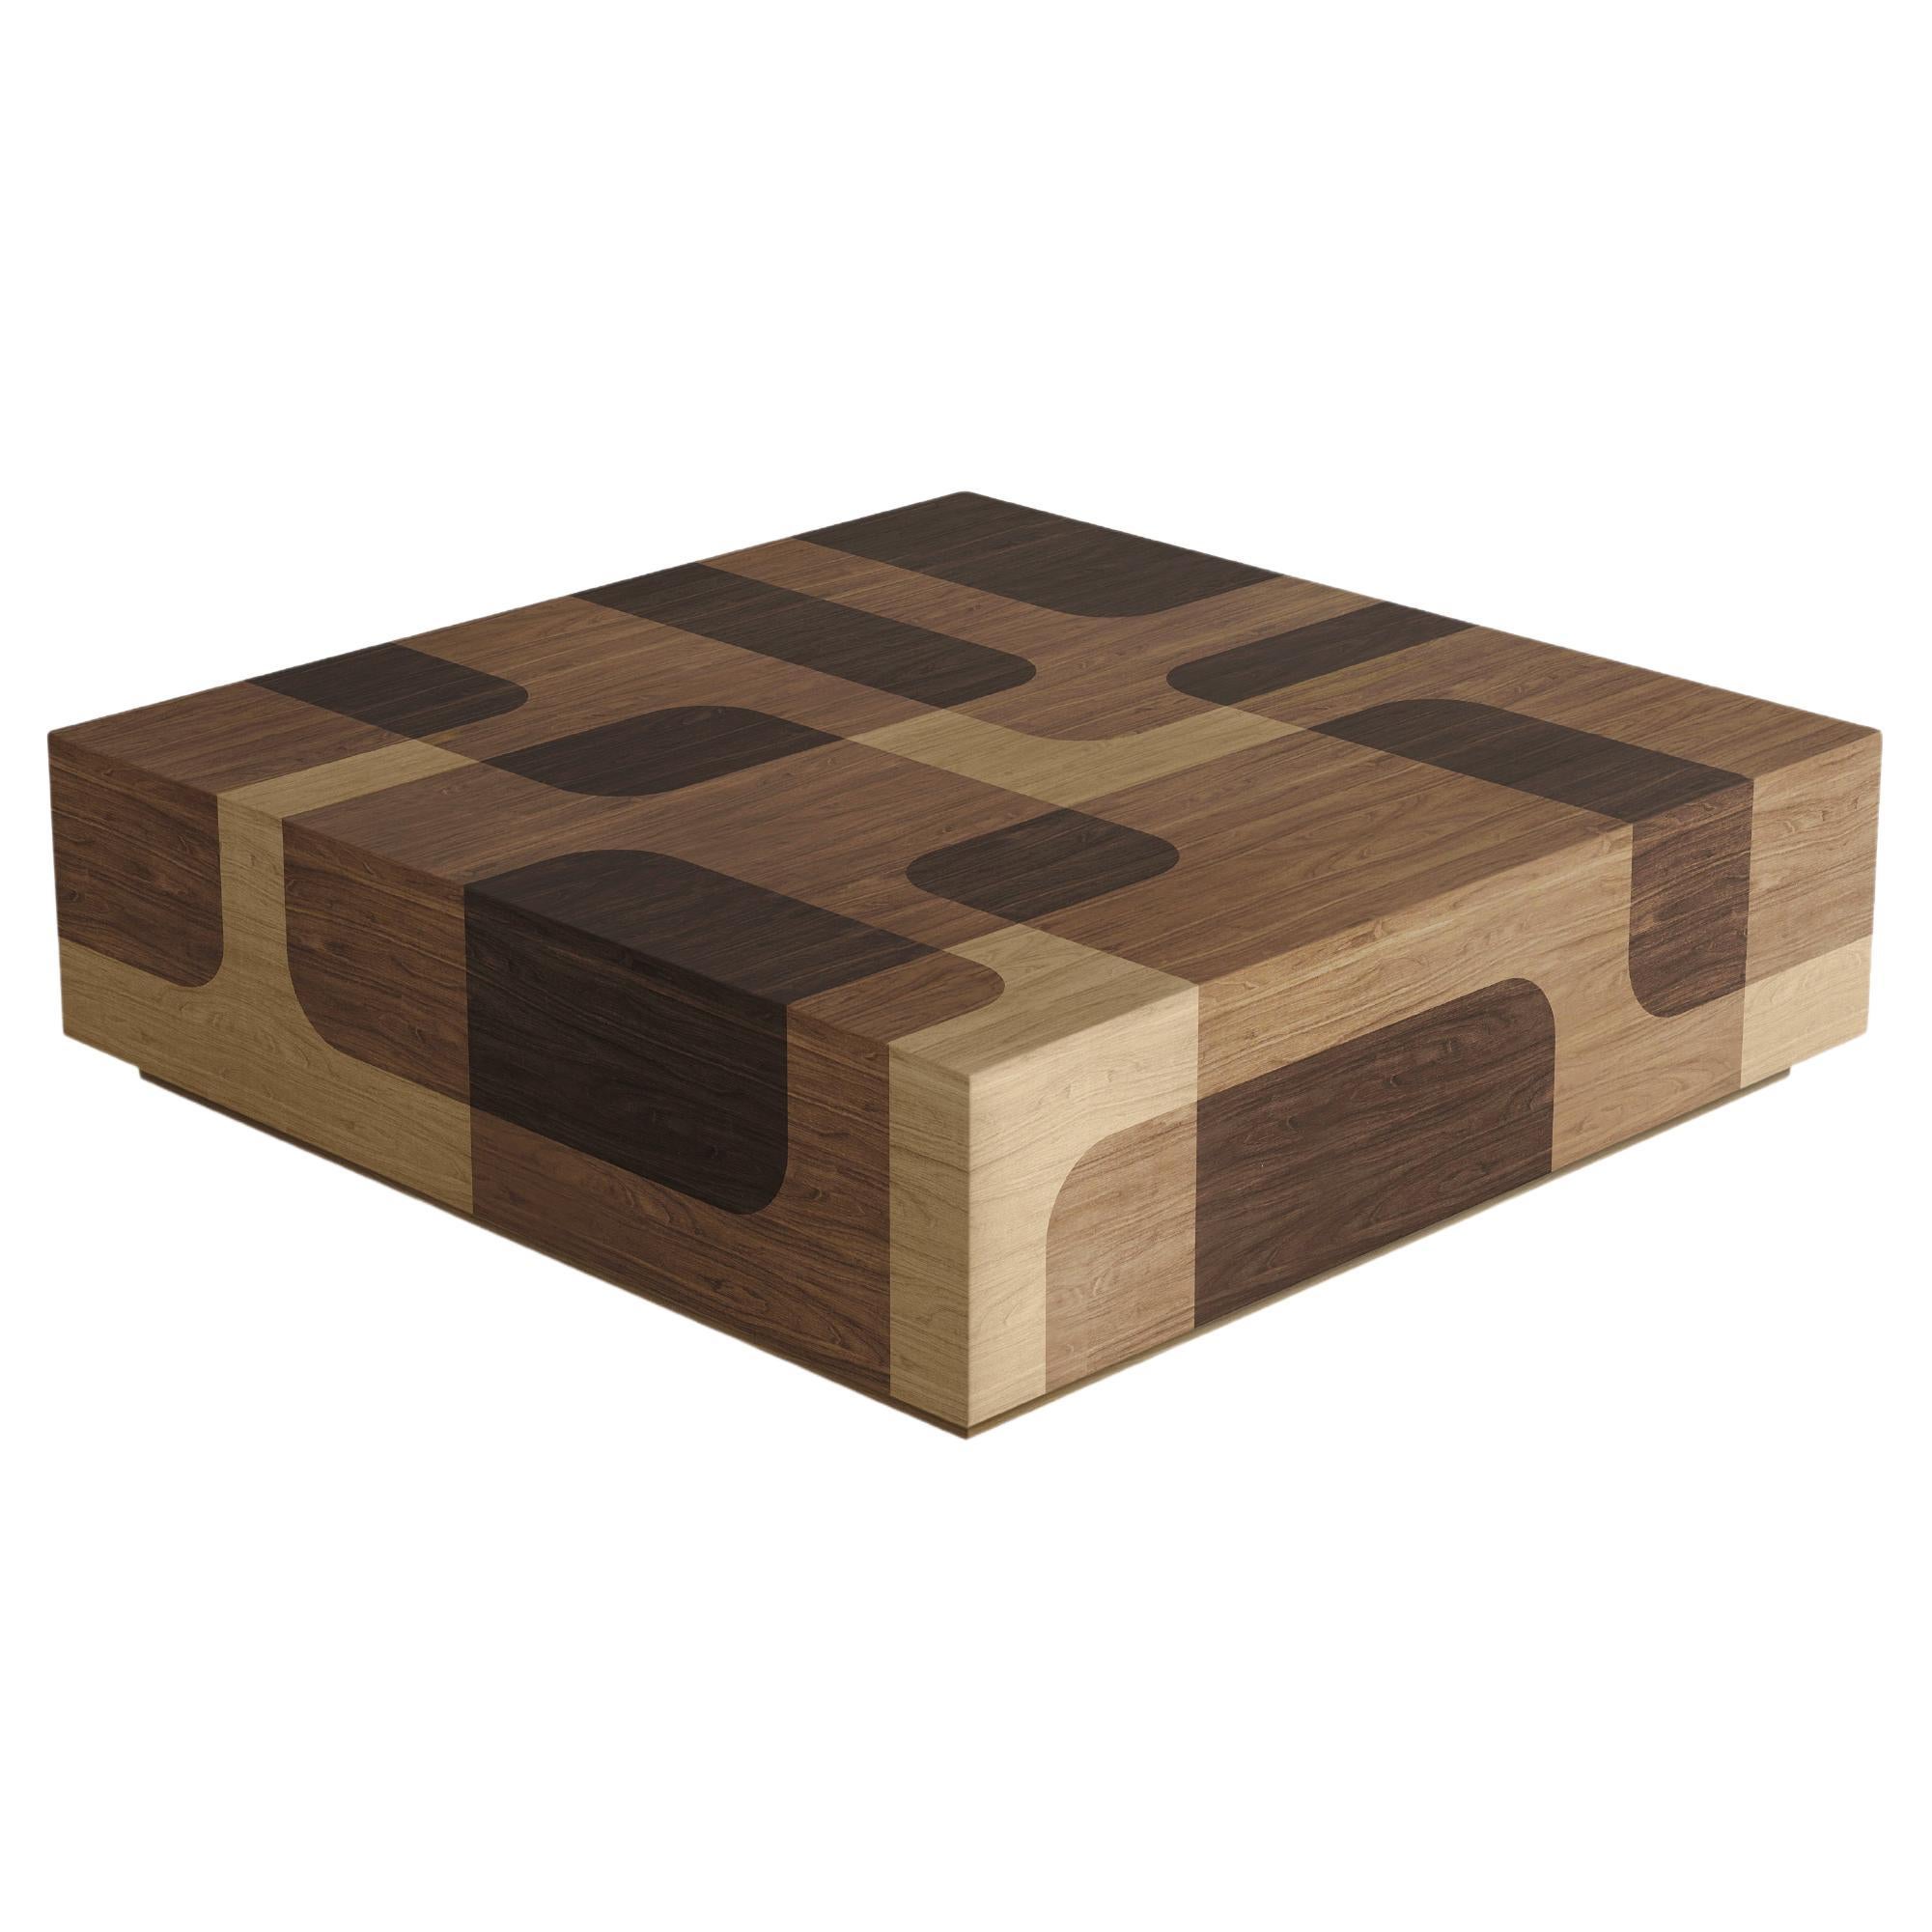 Table basse carrée Bodega, en placage de bois chaud, par Joel Escalona